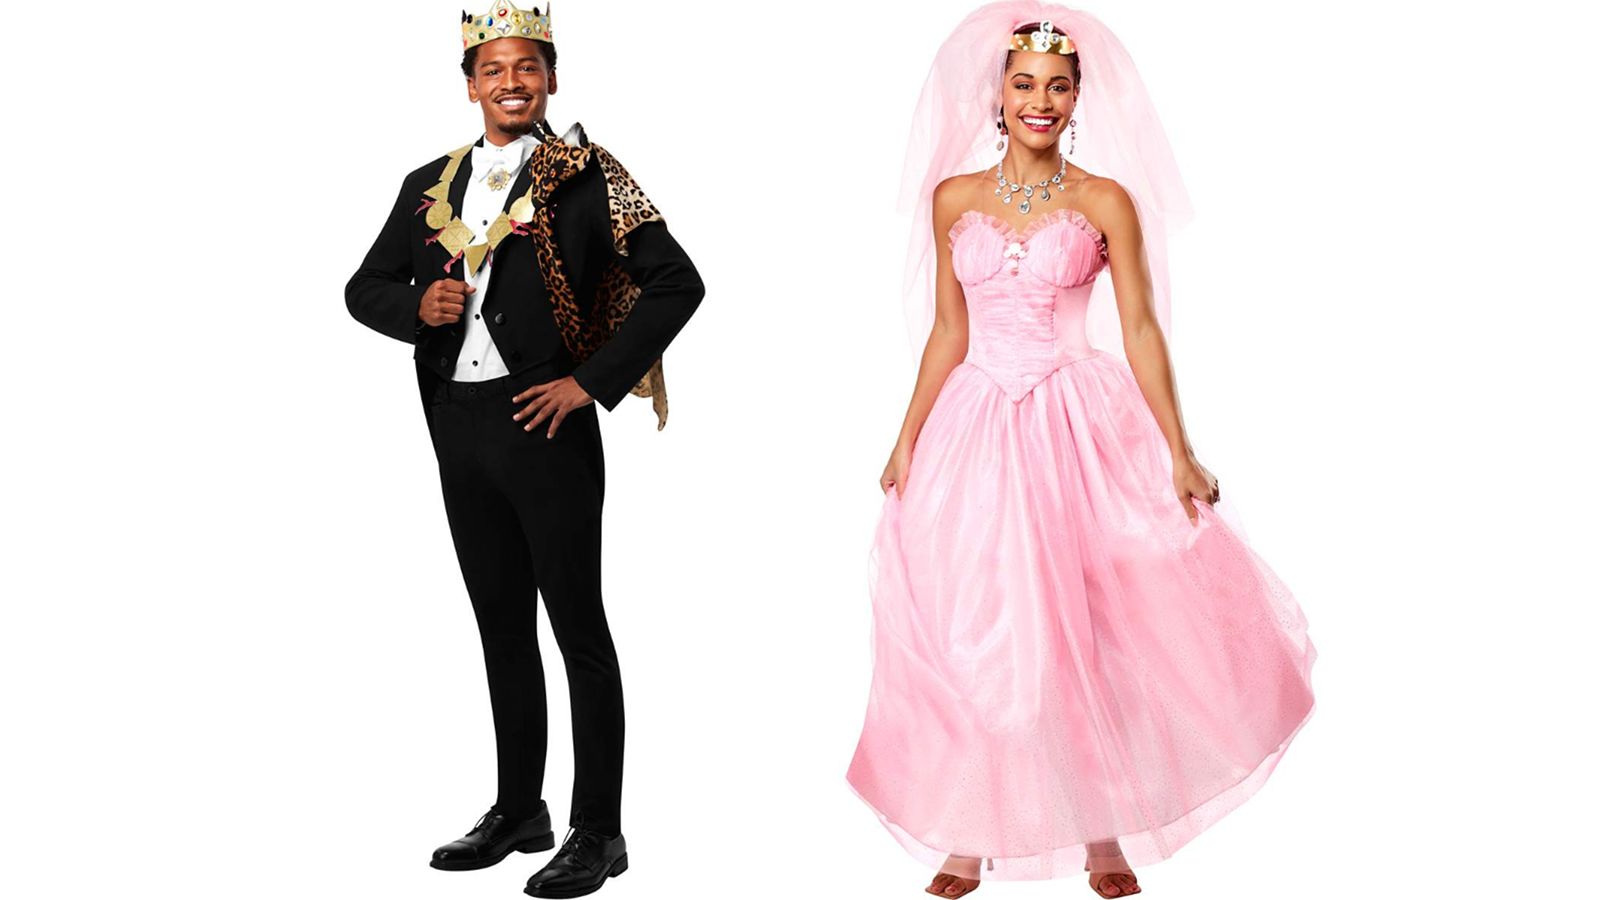 https://media.cnn.com/api/v1/images/stellar/prod/coming-to-america-couples-costume-new-2023.jpg?c=original